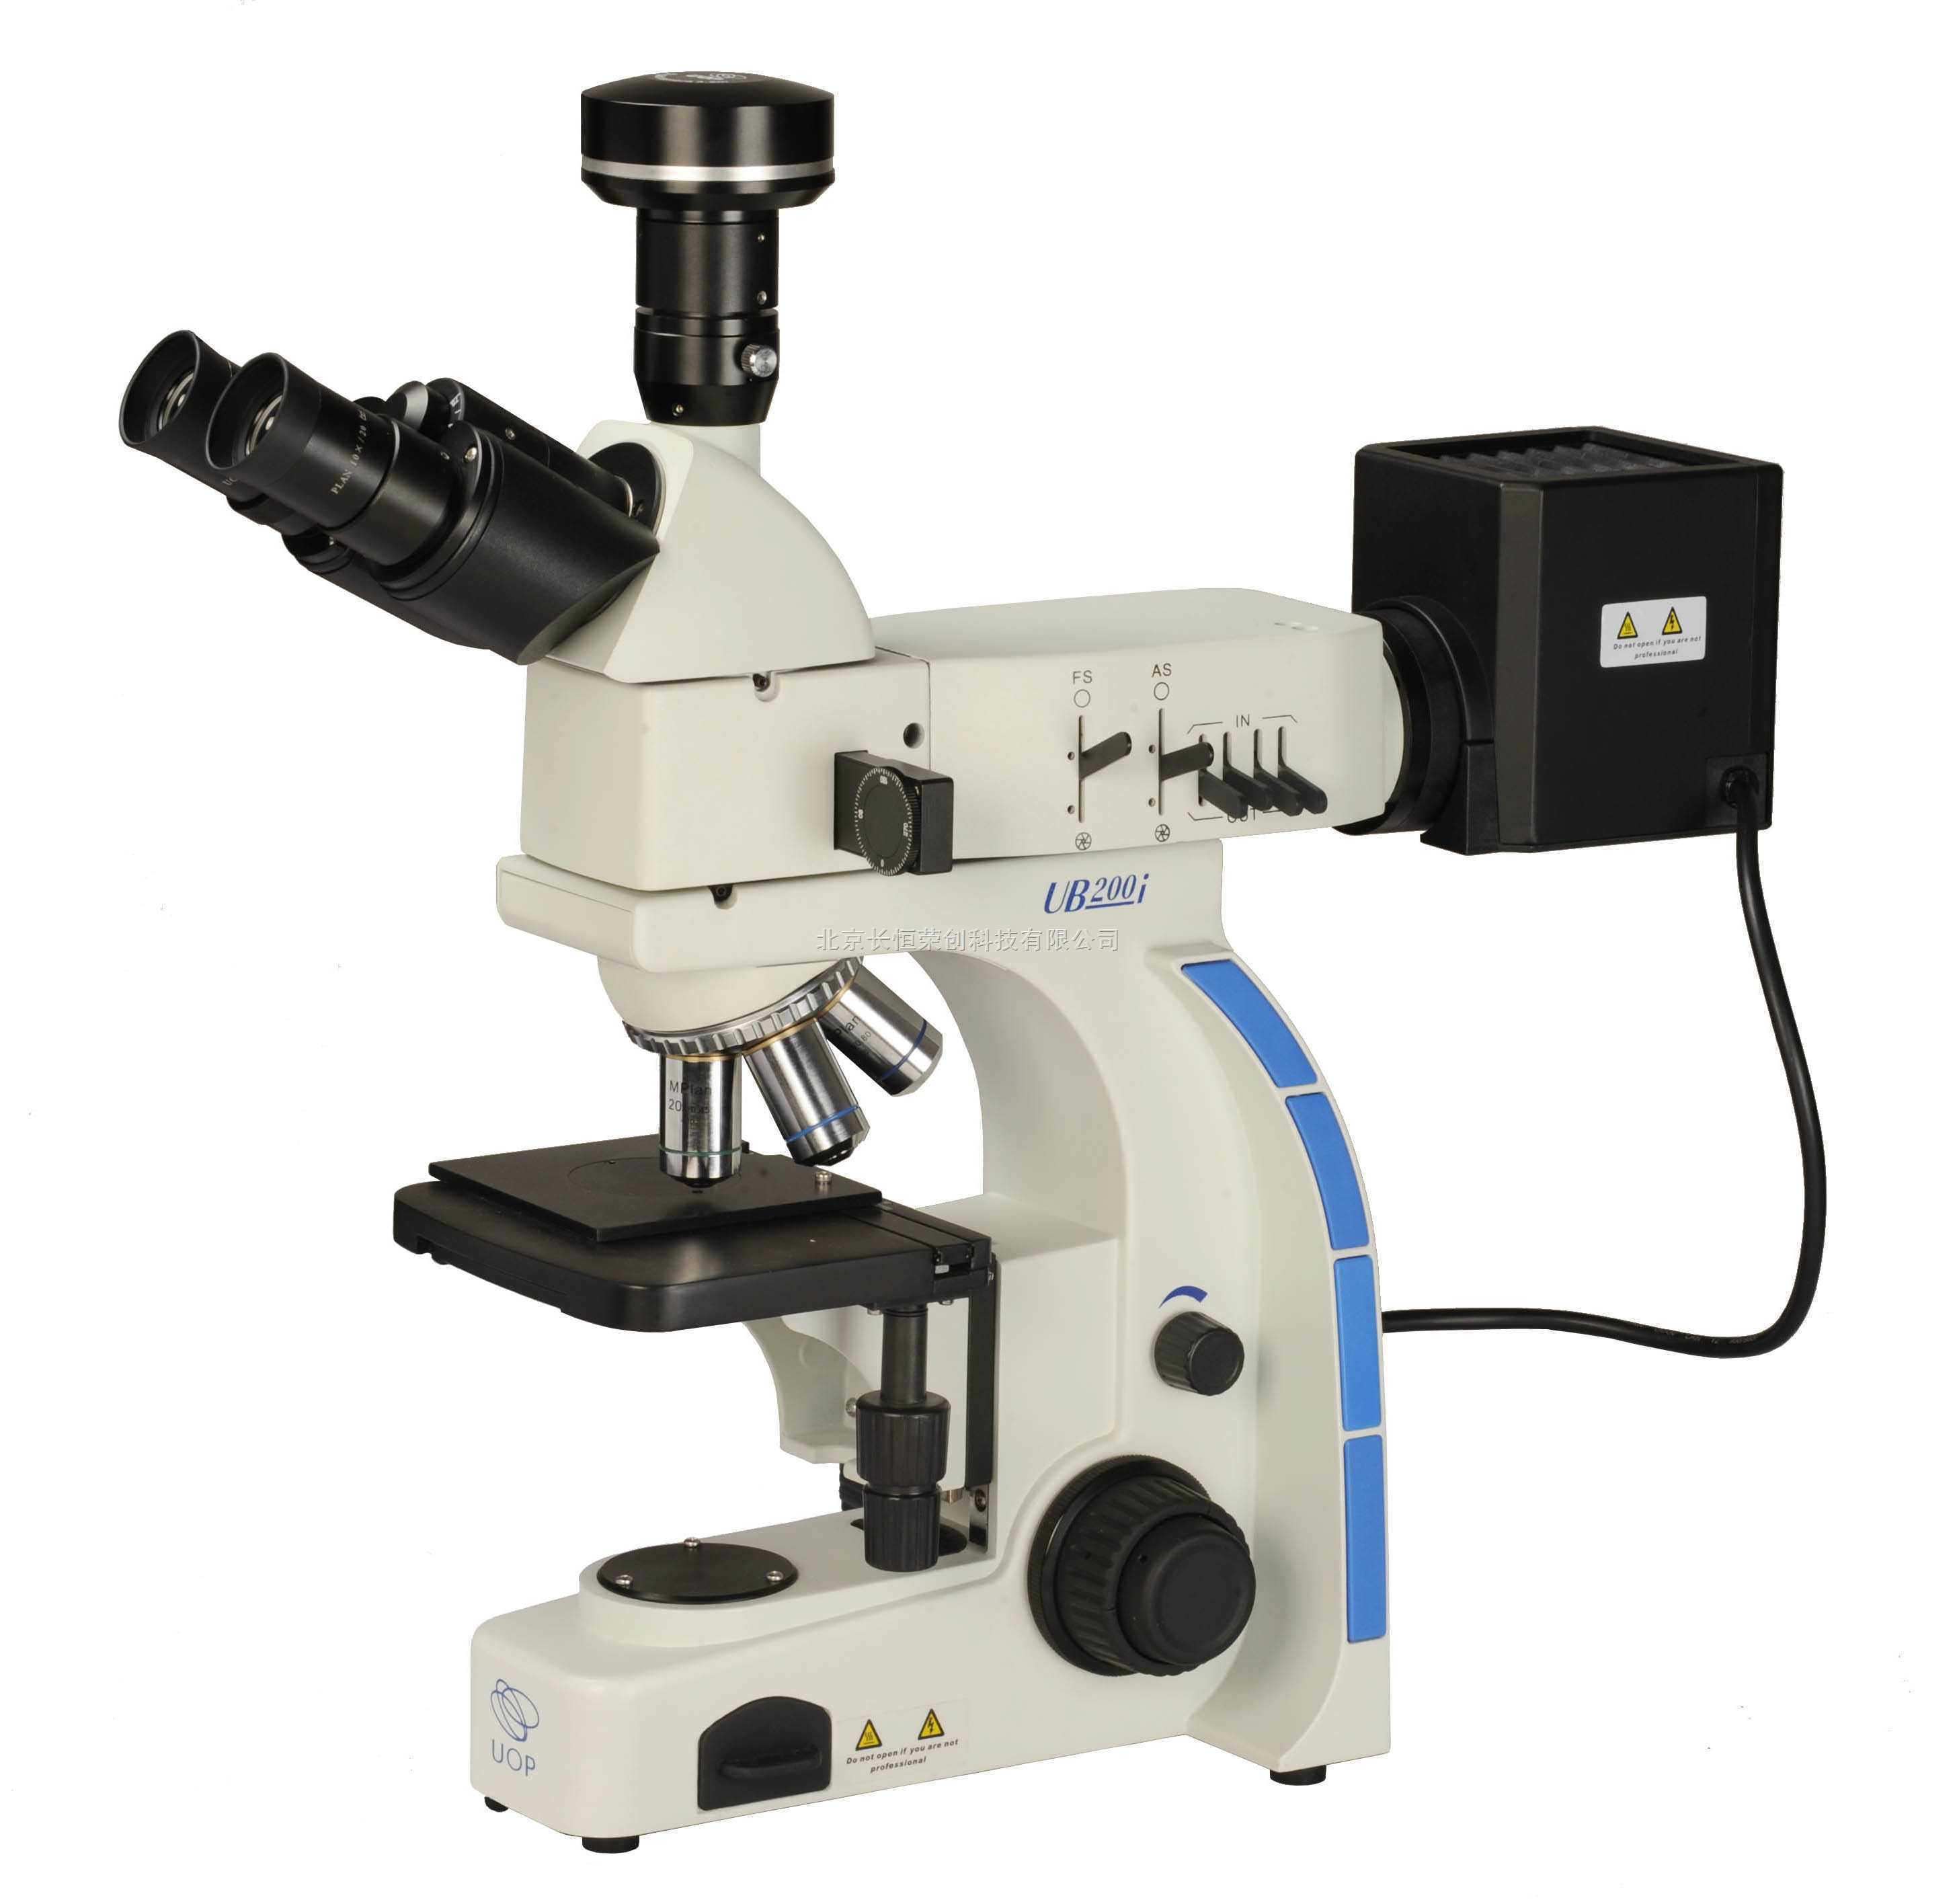 三目正置金相显微镜 JX30B/上海领成显微镜